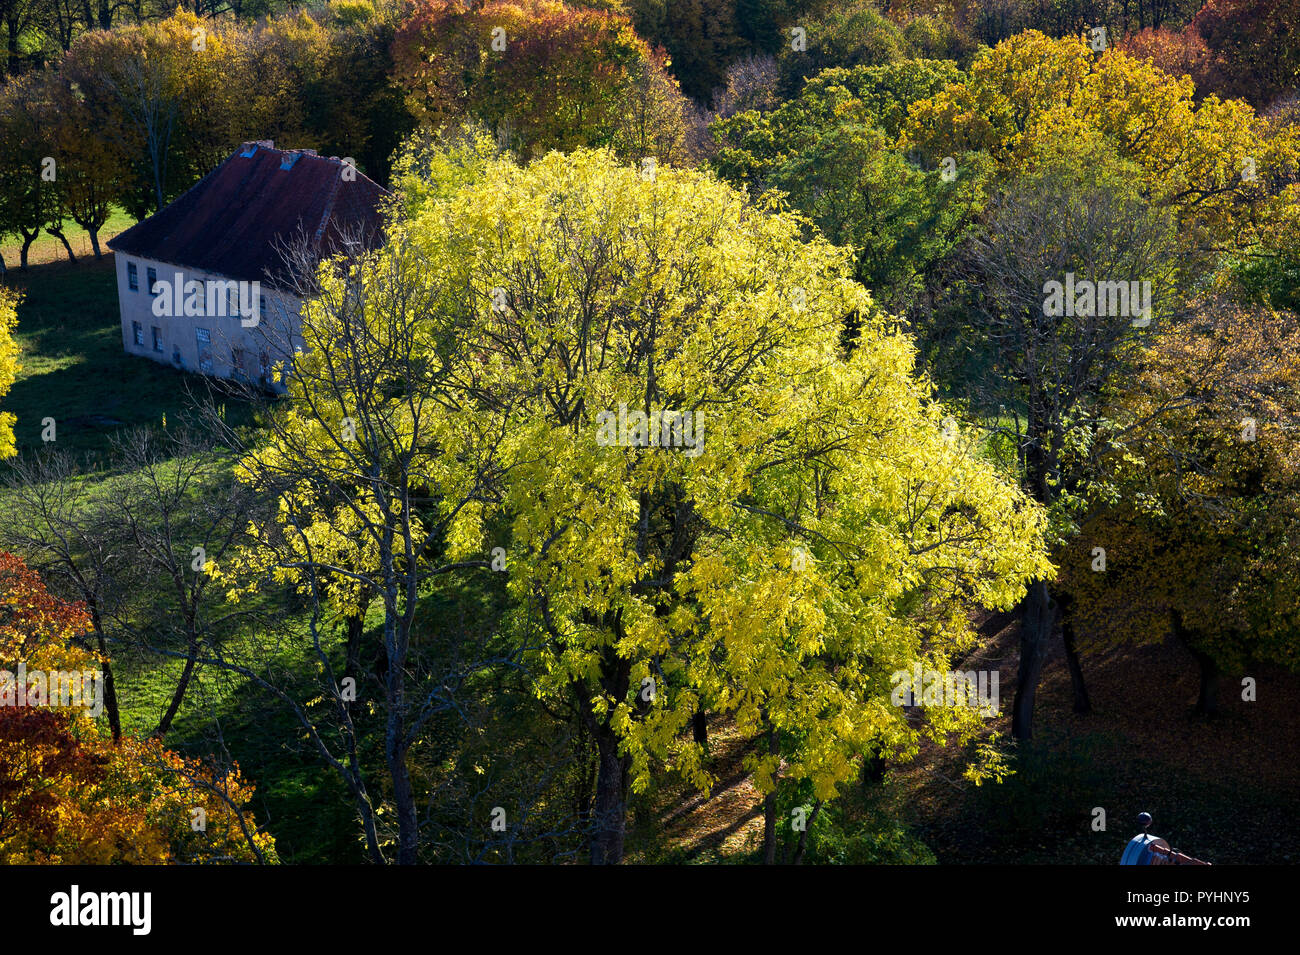 St. Paul canonry in Frauenburg, Polen. 19. Oktober 2018 © wojciech Strozyk/Alamy Stock Foto Stockfoto